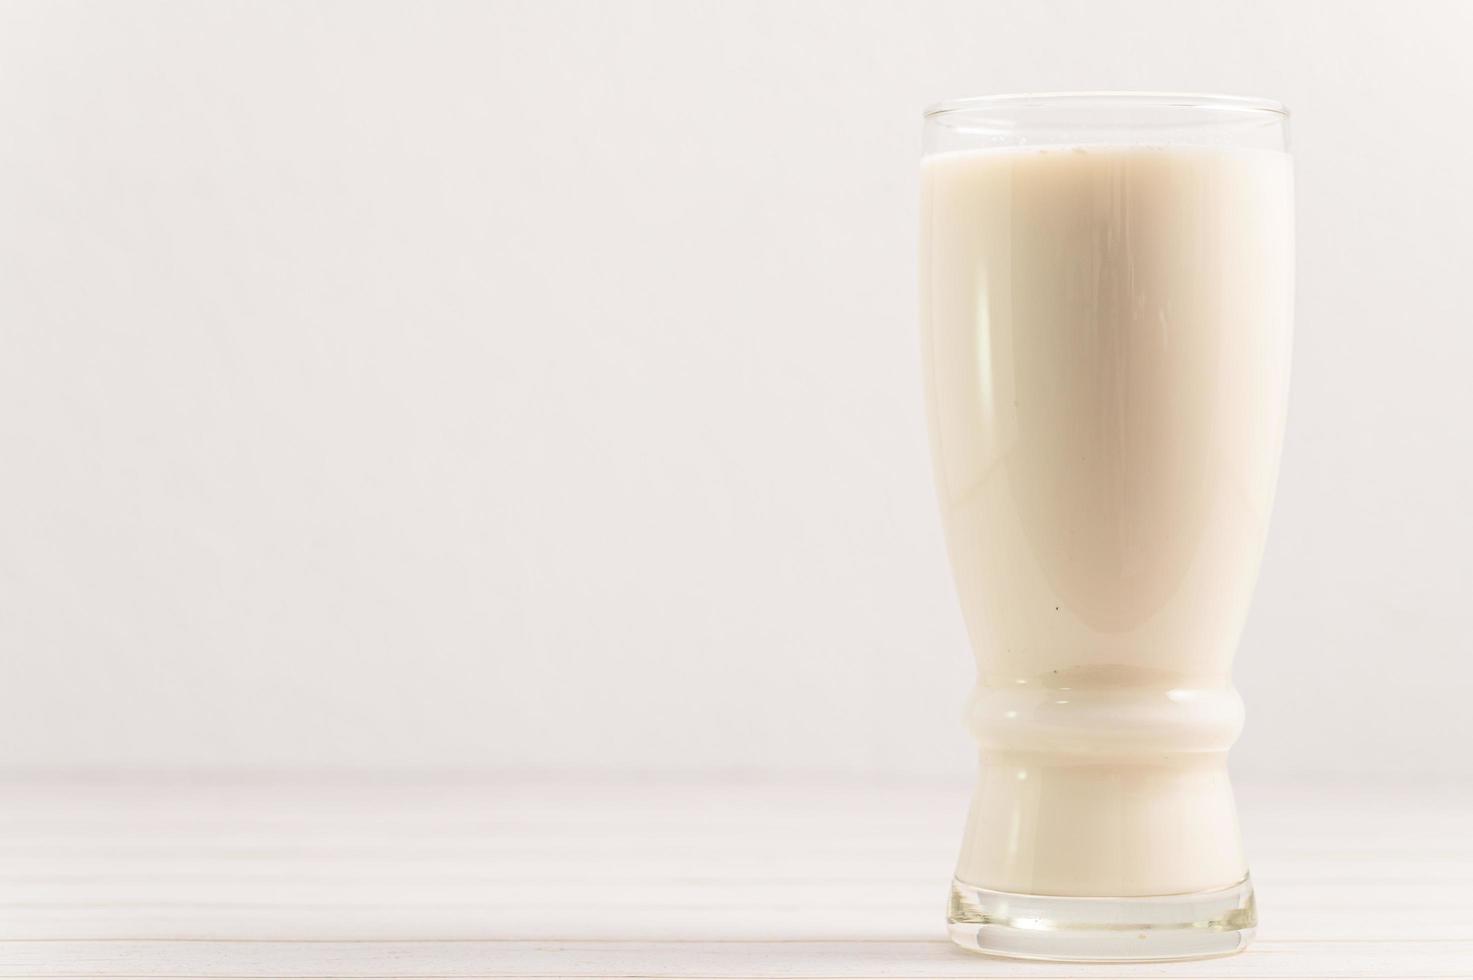 día mundial de la leche, beba leche saludable para un cuerpo fuerte foto